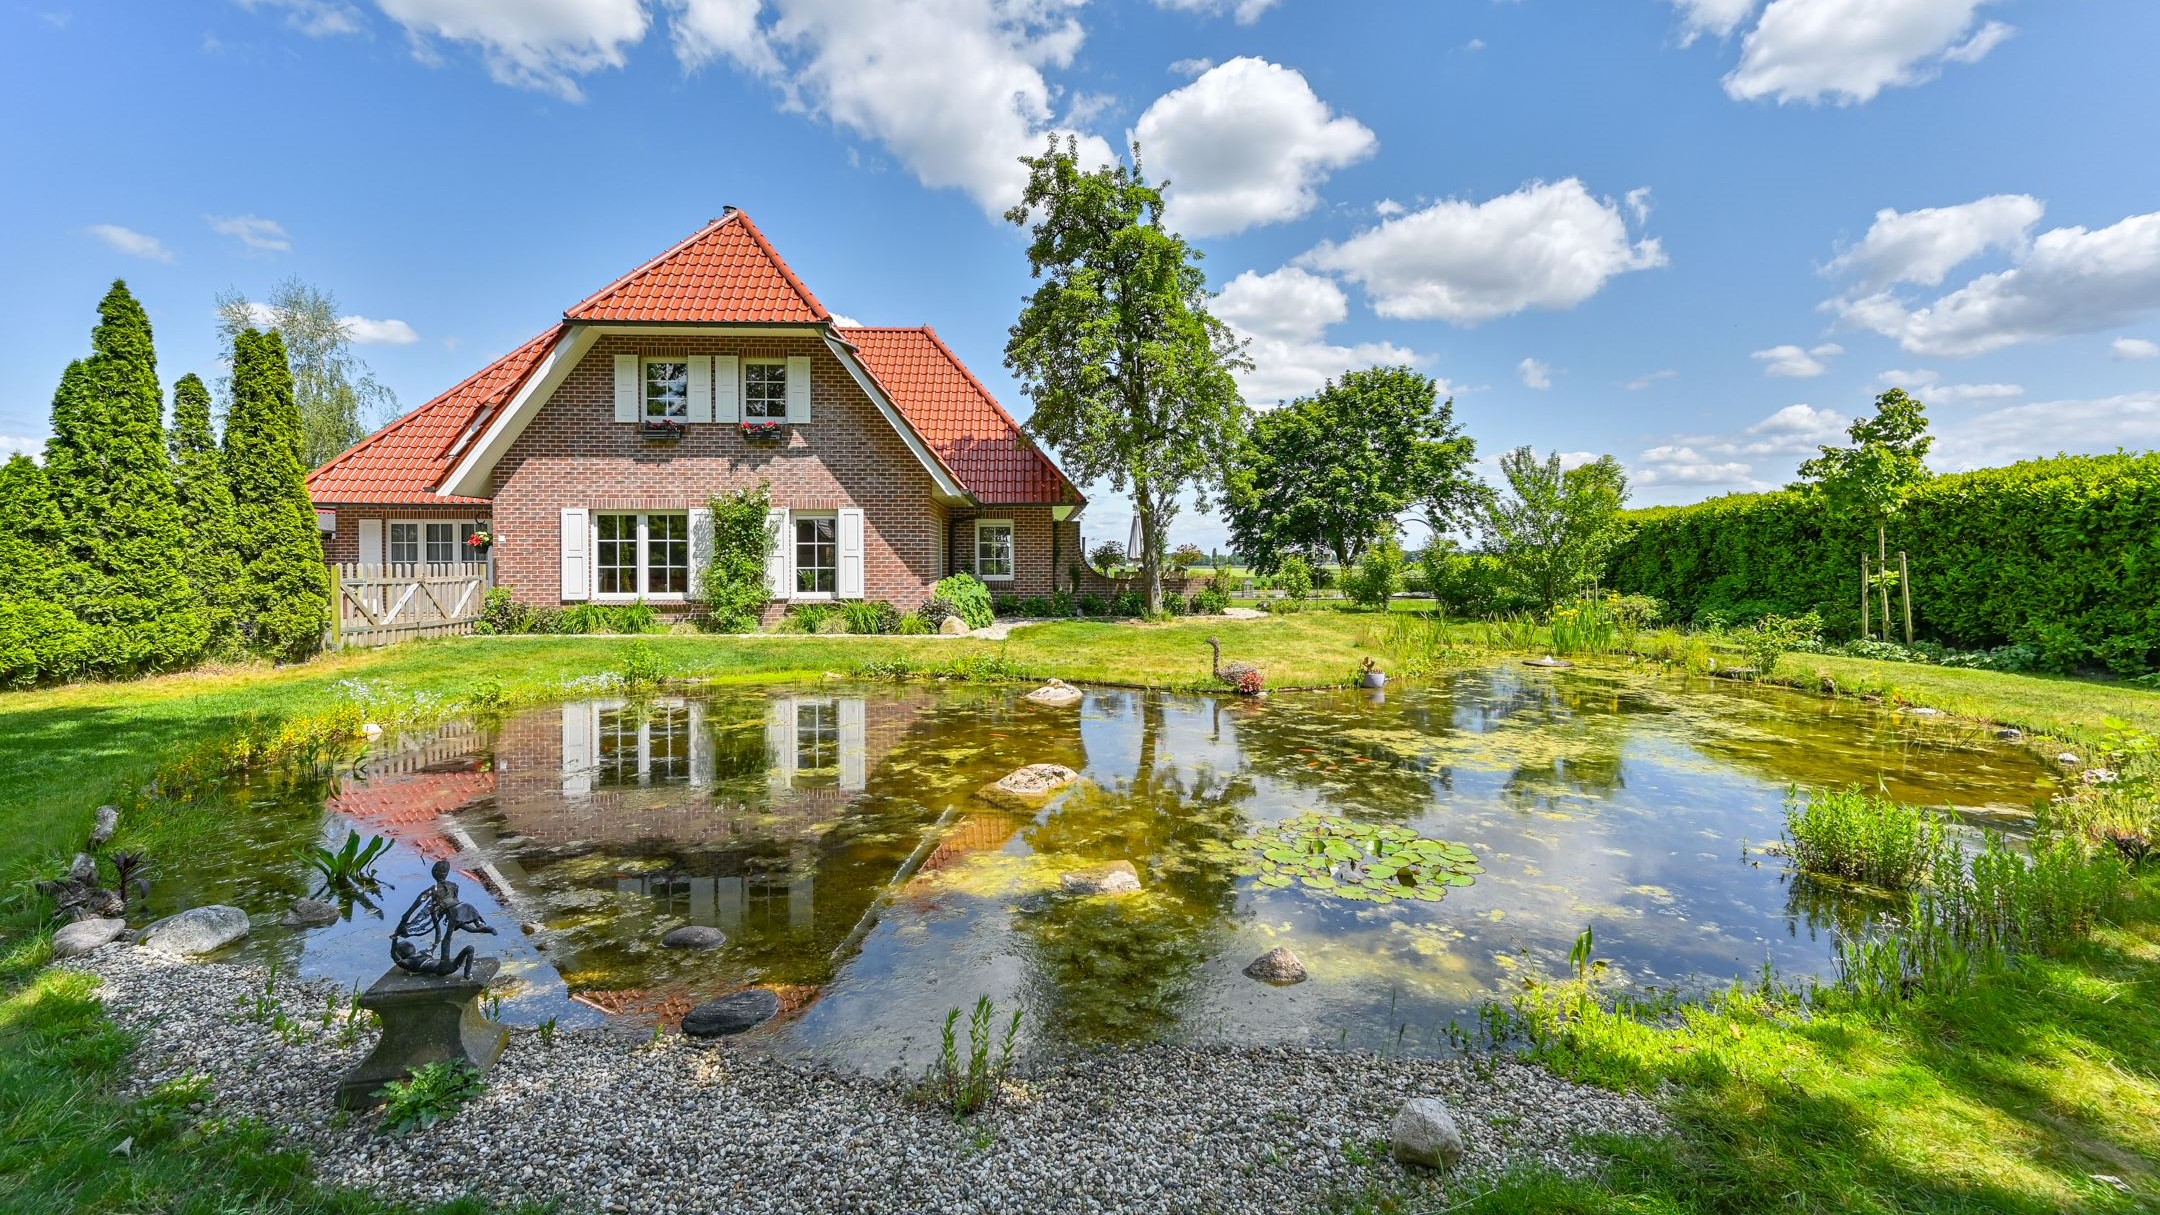 Te koop in Drenthe: vrijstaand landhuis met (zwem)vijver en vakantiehuis